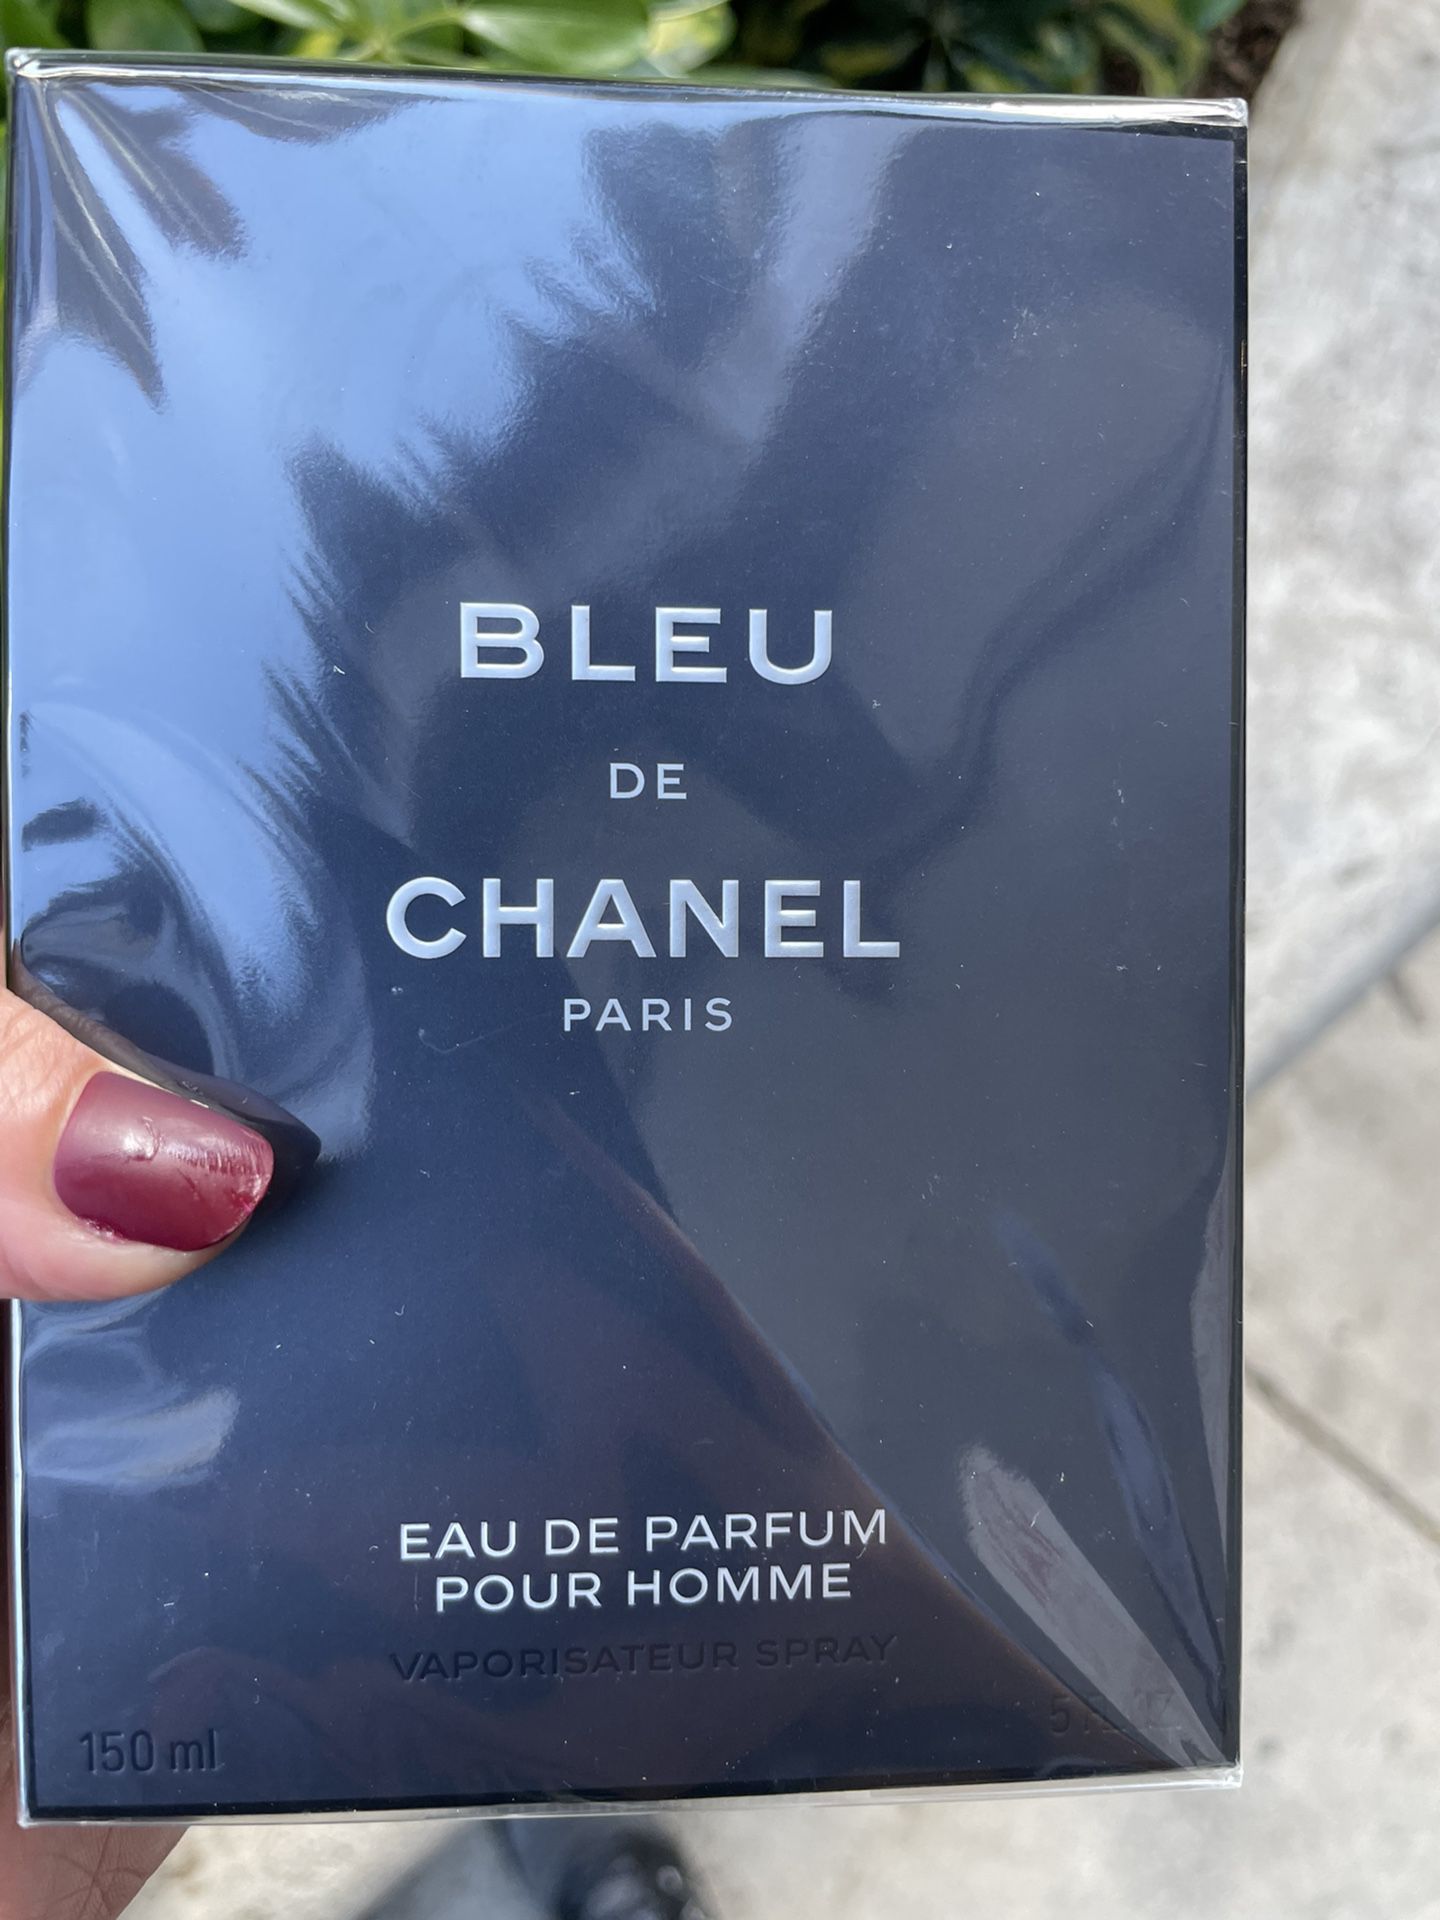 BLEU de CHANEL Paris EDP Eau De Parfum Pour Homme 100ml 3.4oz